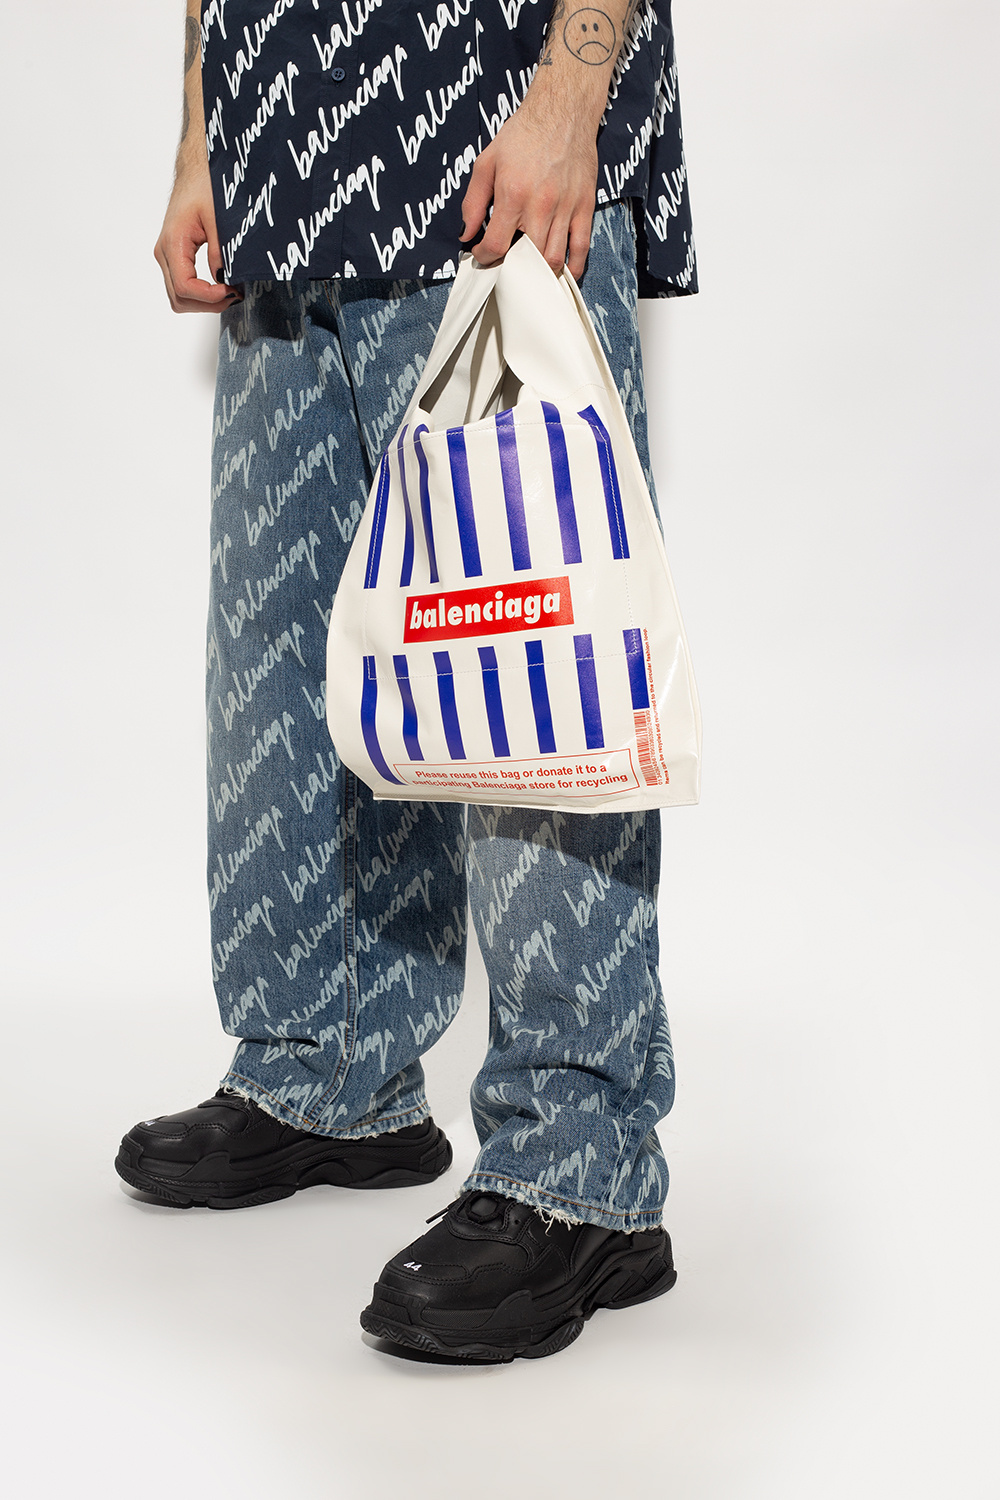 Balenciaga ‘Monday’ shopper mini bag